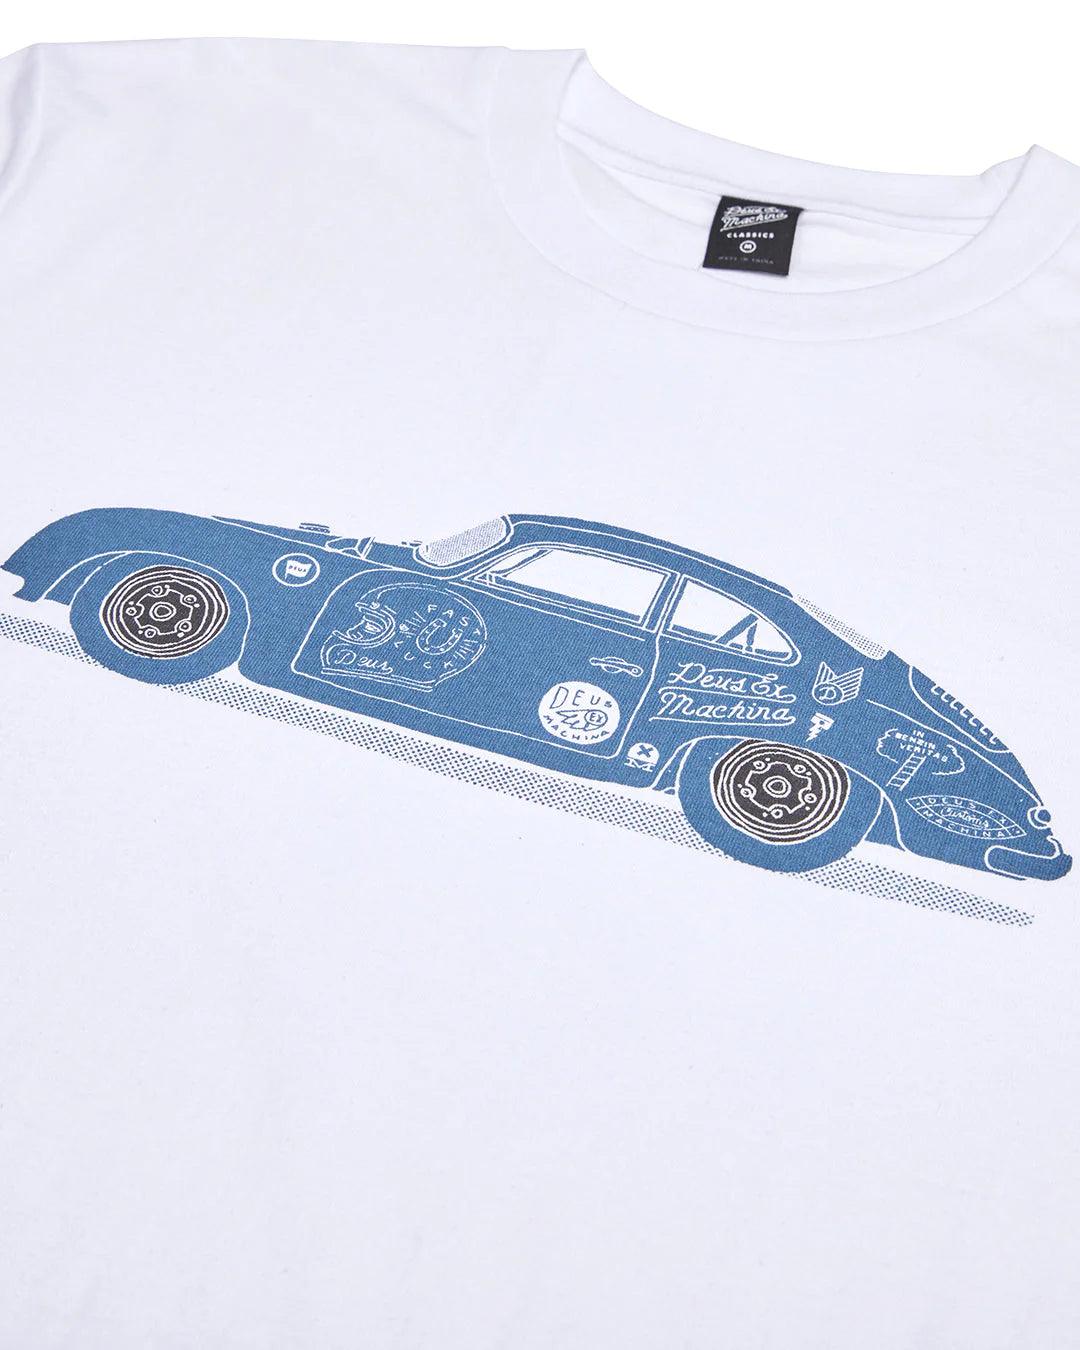 Camiseta Deus Ex Machina Classic 356 Porsche Tee White - ECRU